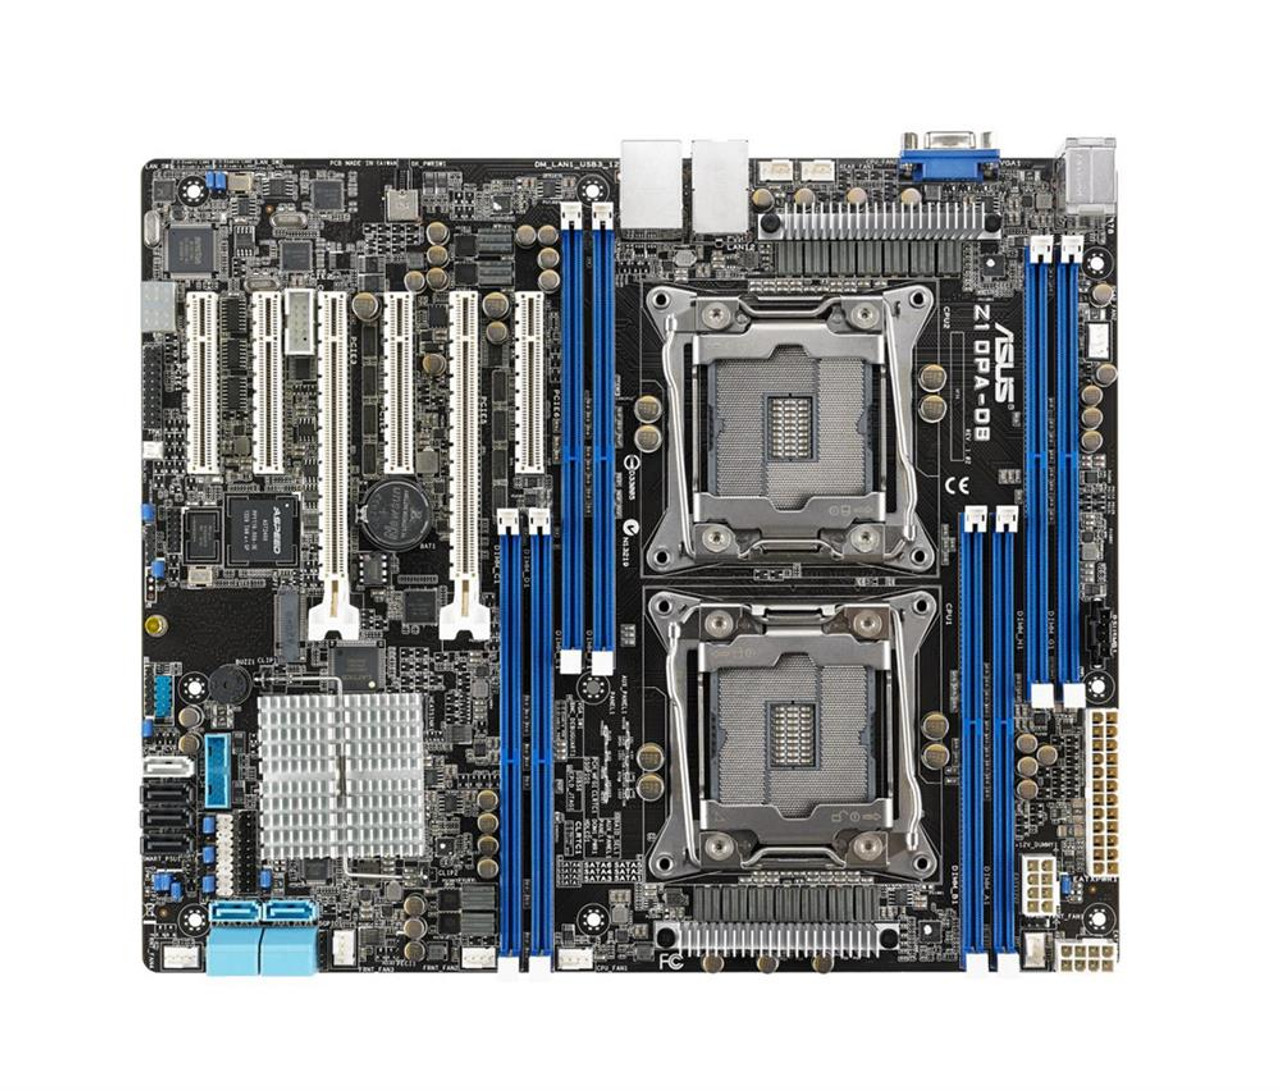 90SB03X1-M0UAY0 ASUS Z10PA-D8 Server Motherboard Intel C612 Chipset Socket LGA 2011-v3 (Refurbished)